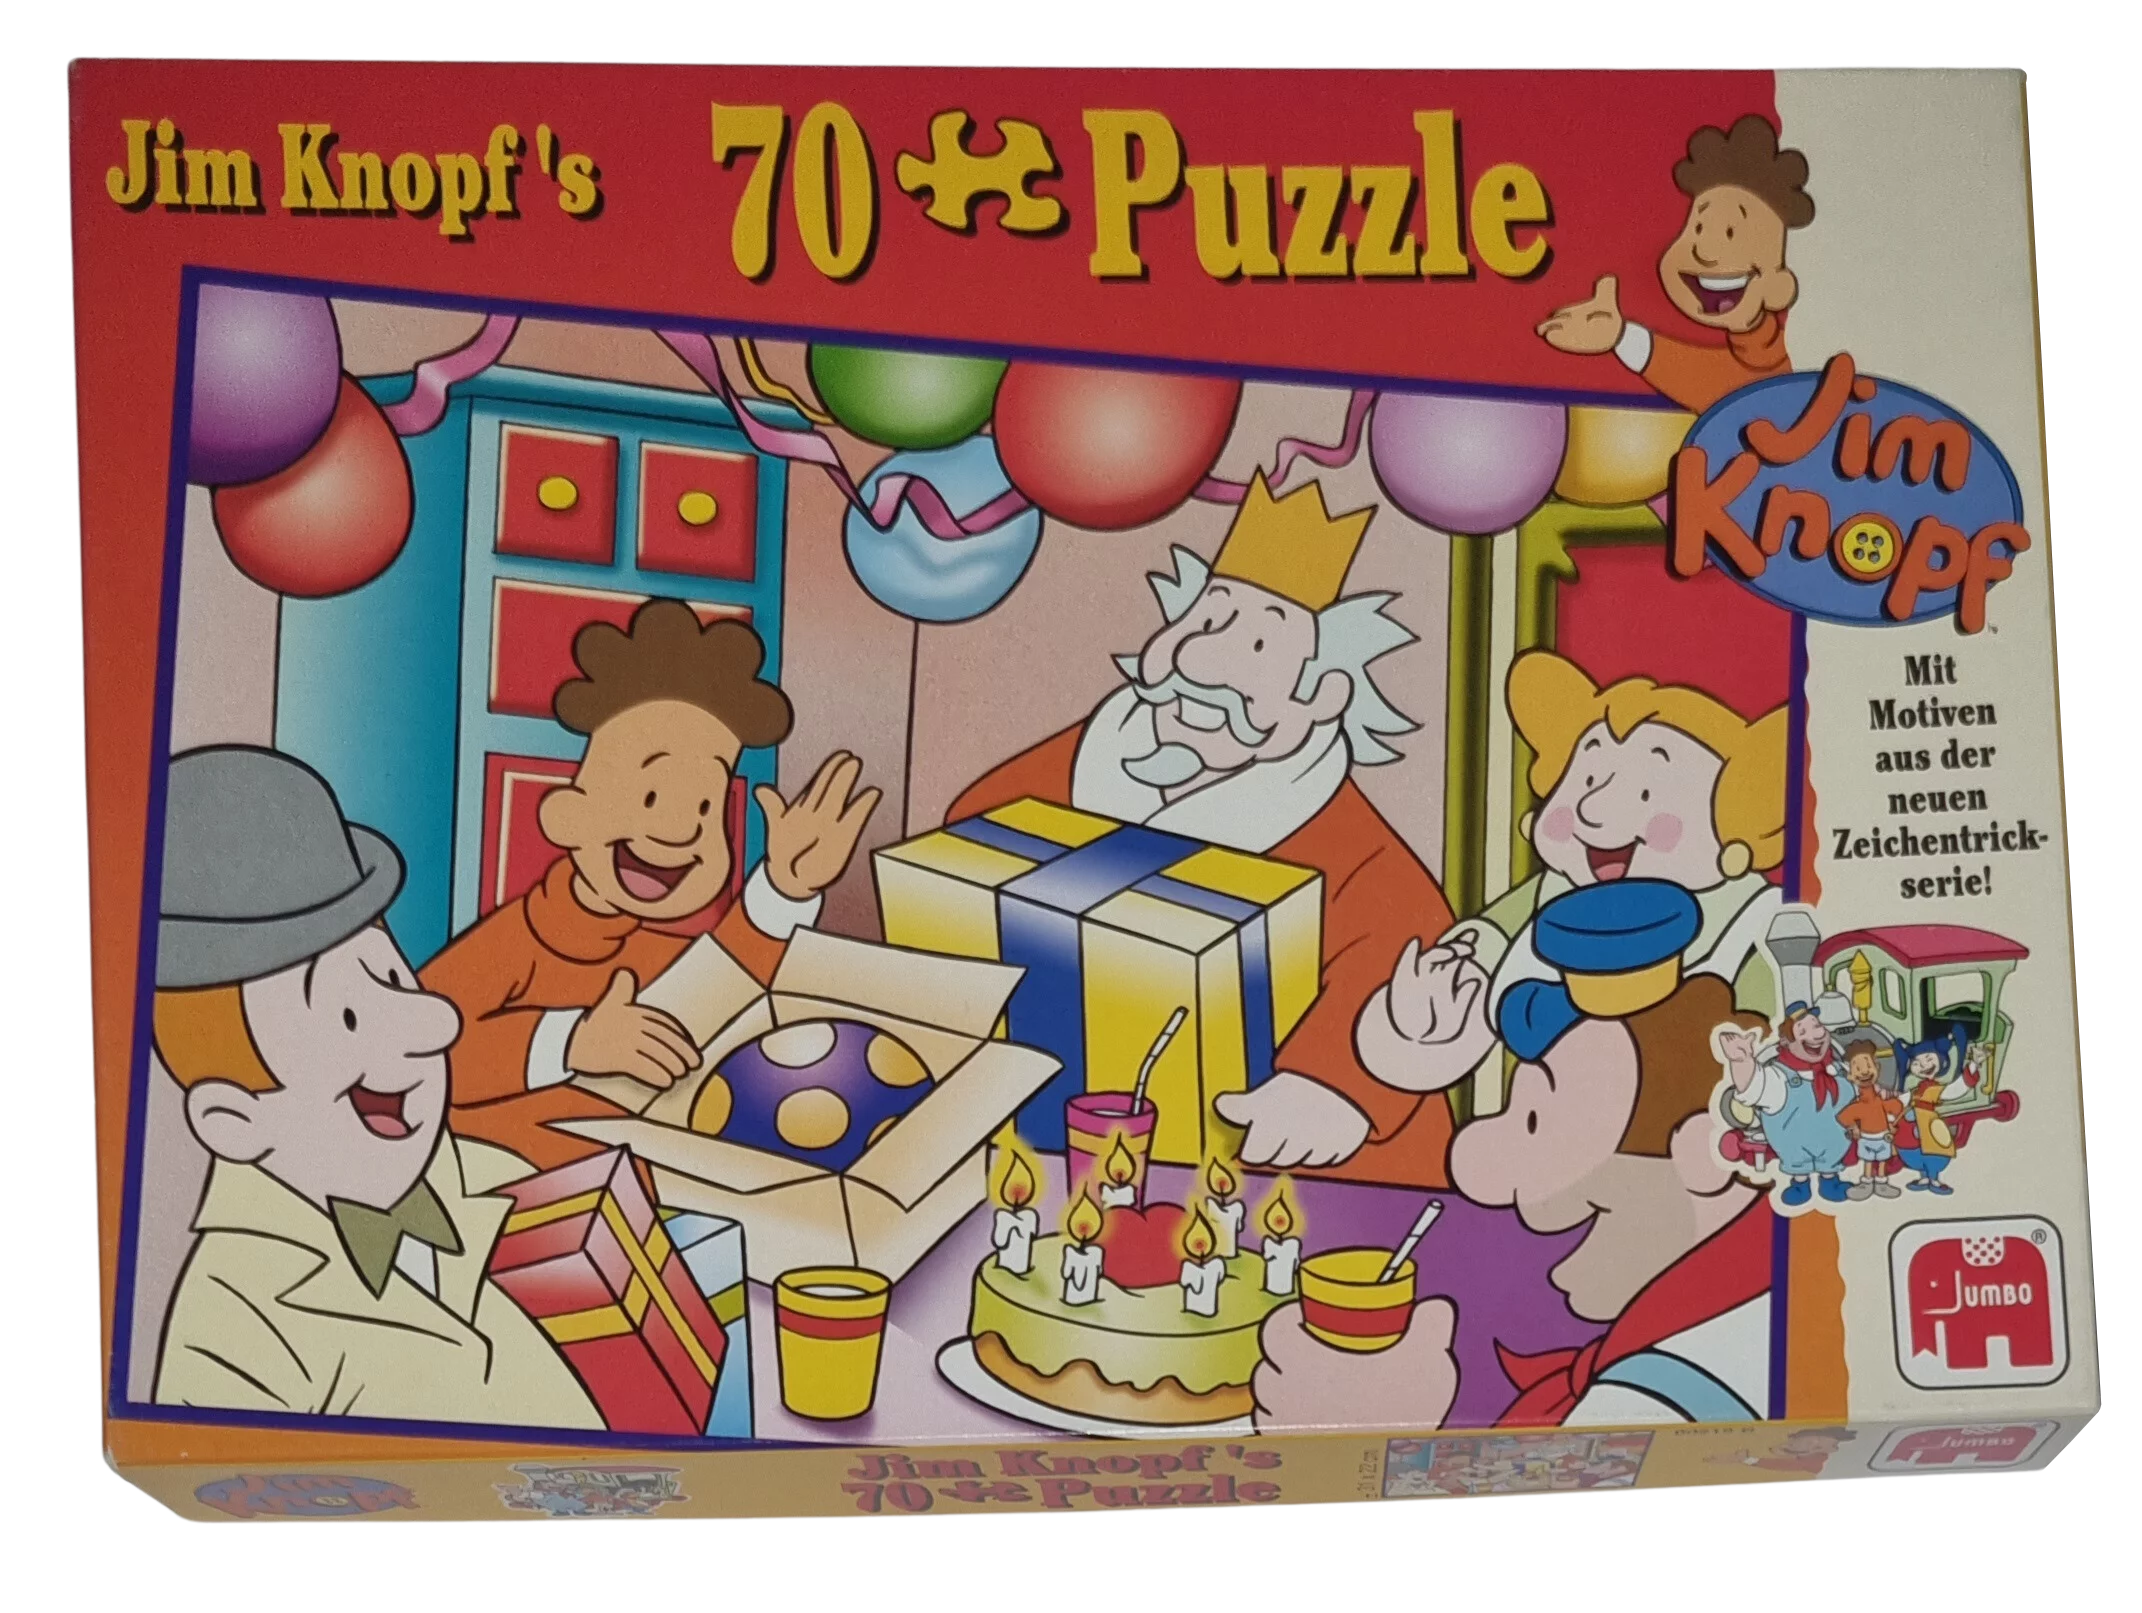 Jumbo Jim Knopf's Puzzle 00219 Geburtstagsfeier 70 Teile